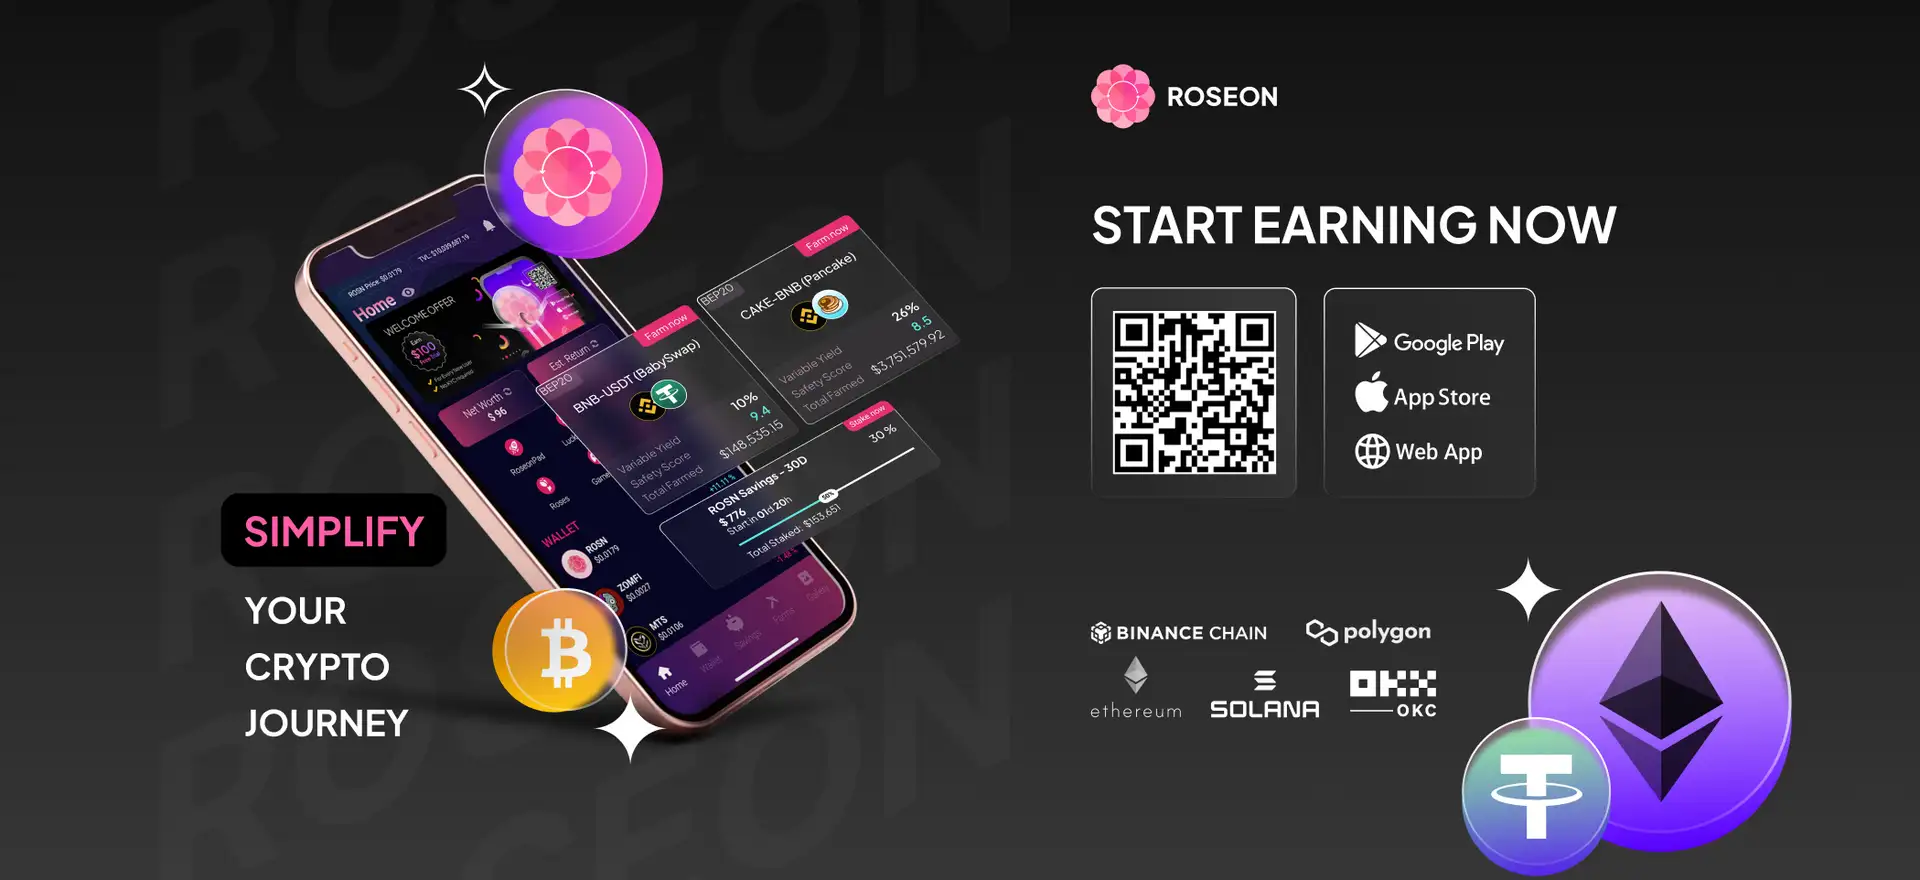 Roseon App Review